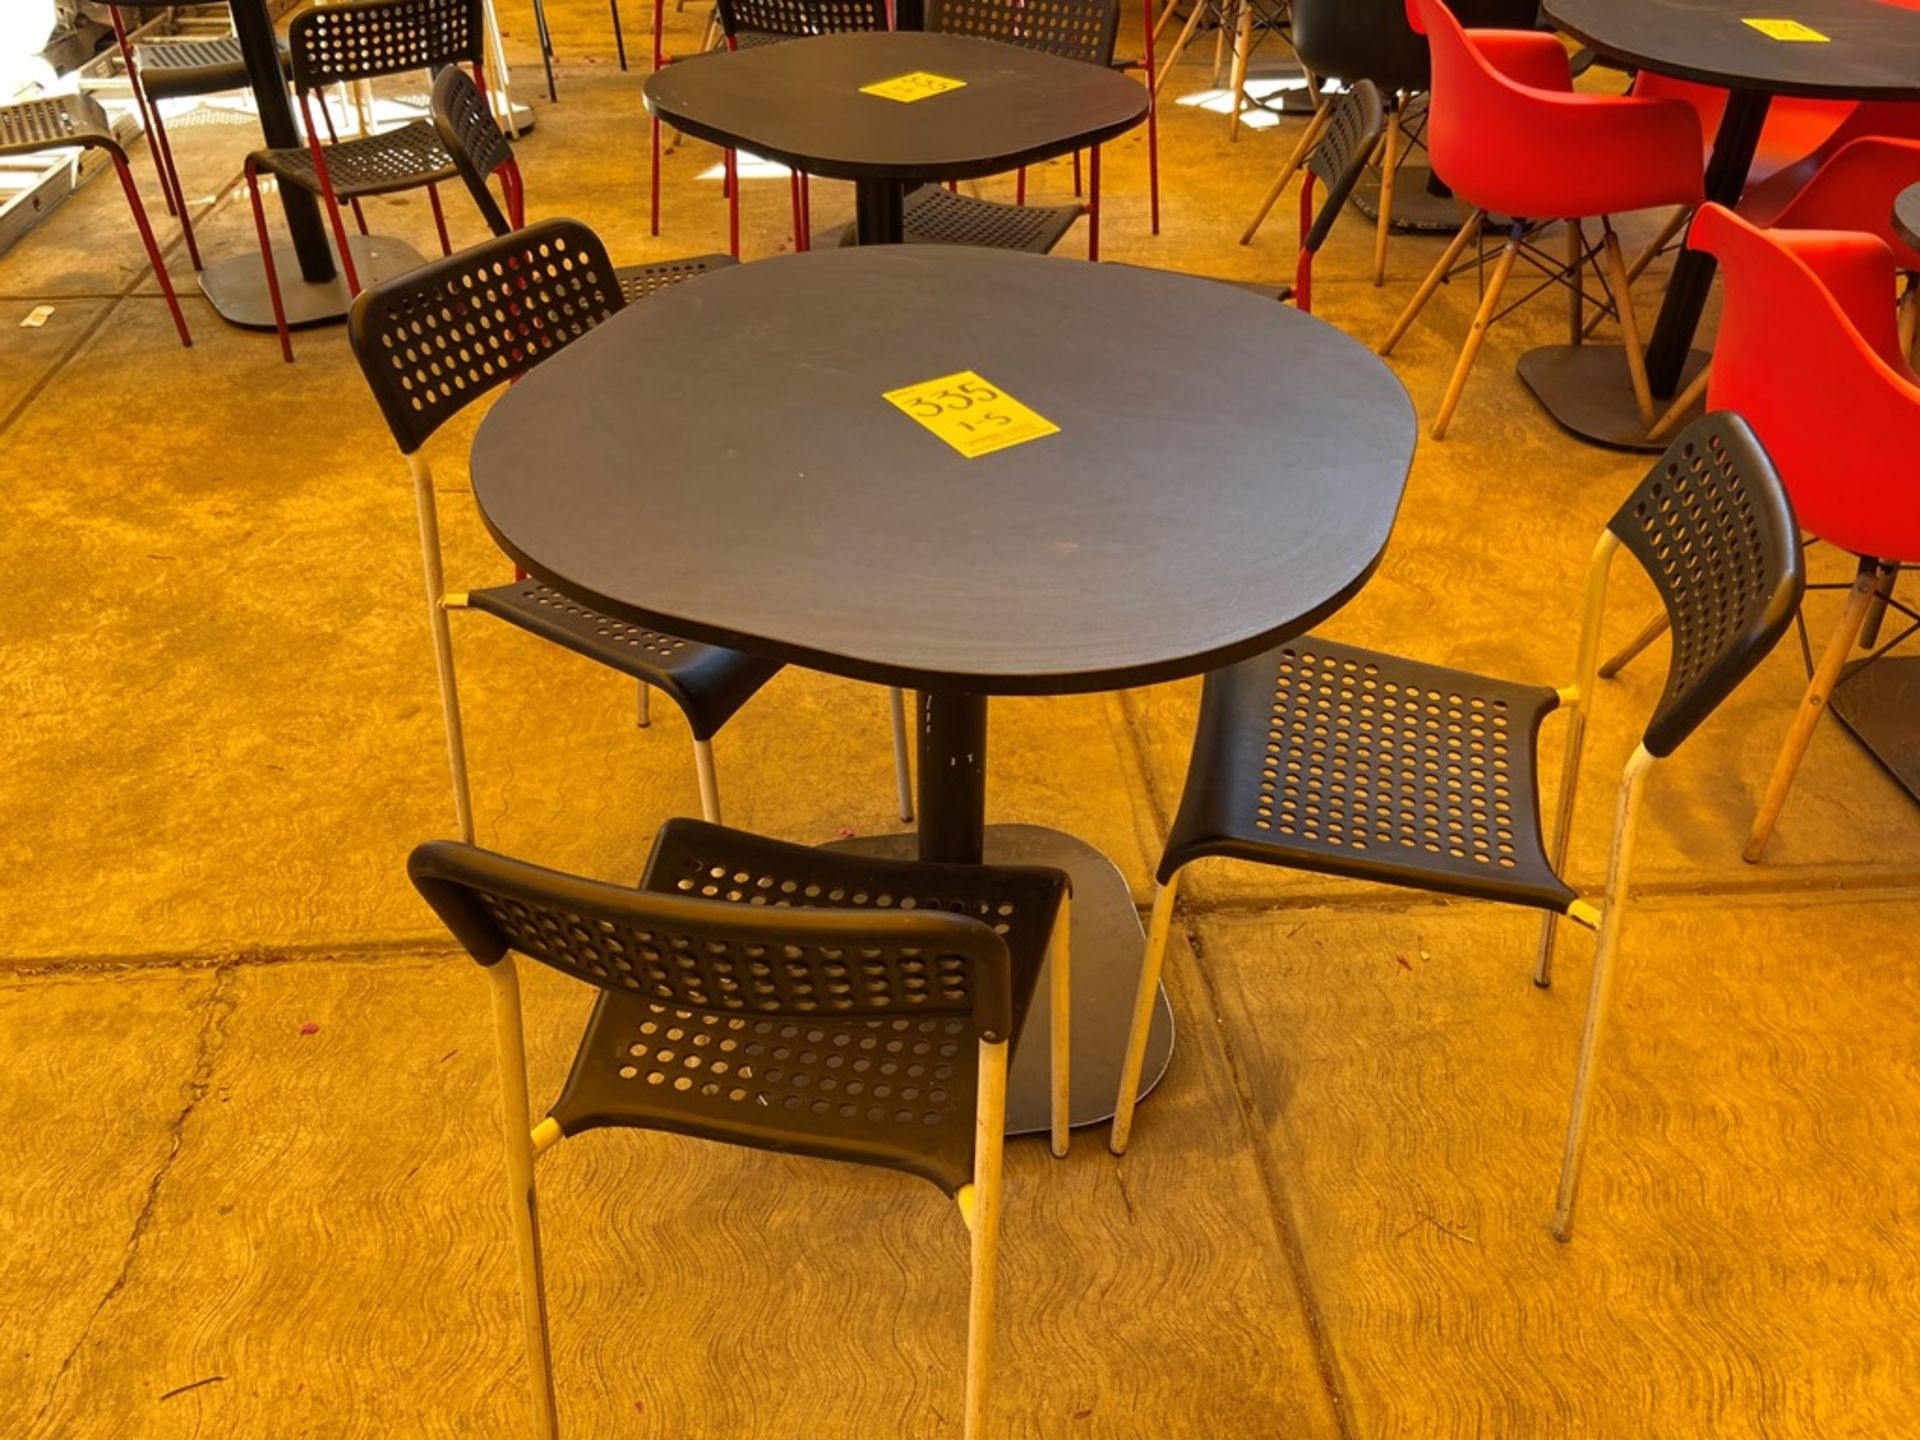 Cinco mesas cuadradas en melamina con estructura metálica; 4 de 70 x 75 cm y una de 80 x 75 cm